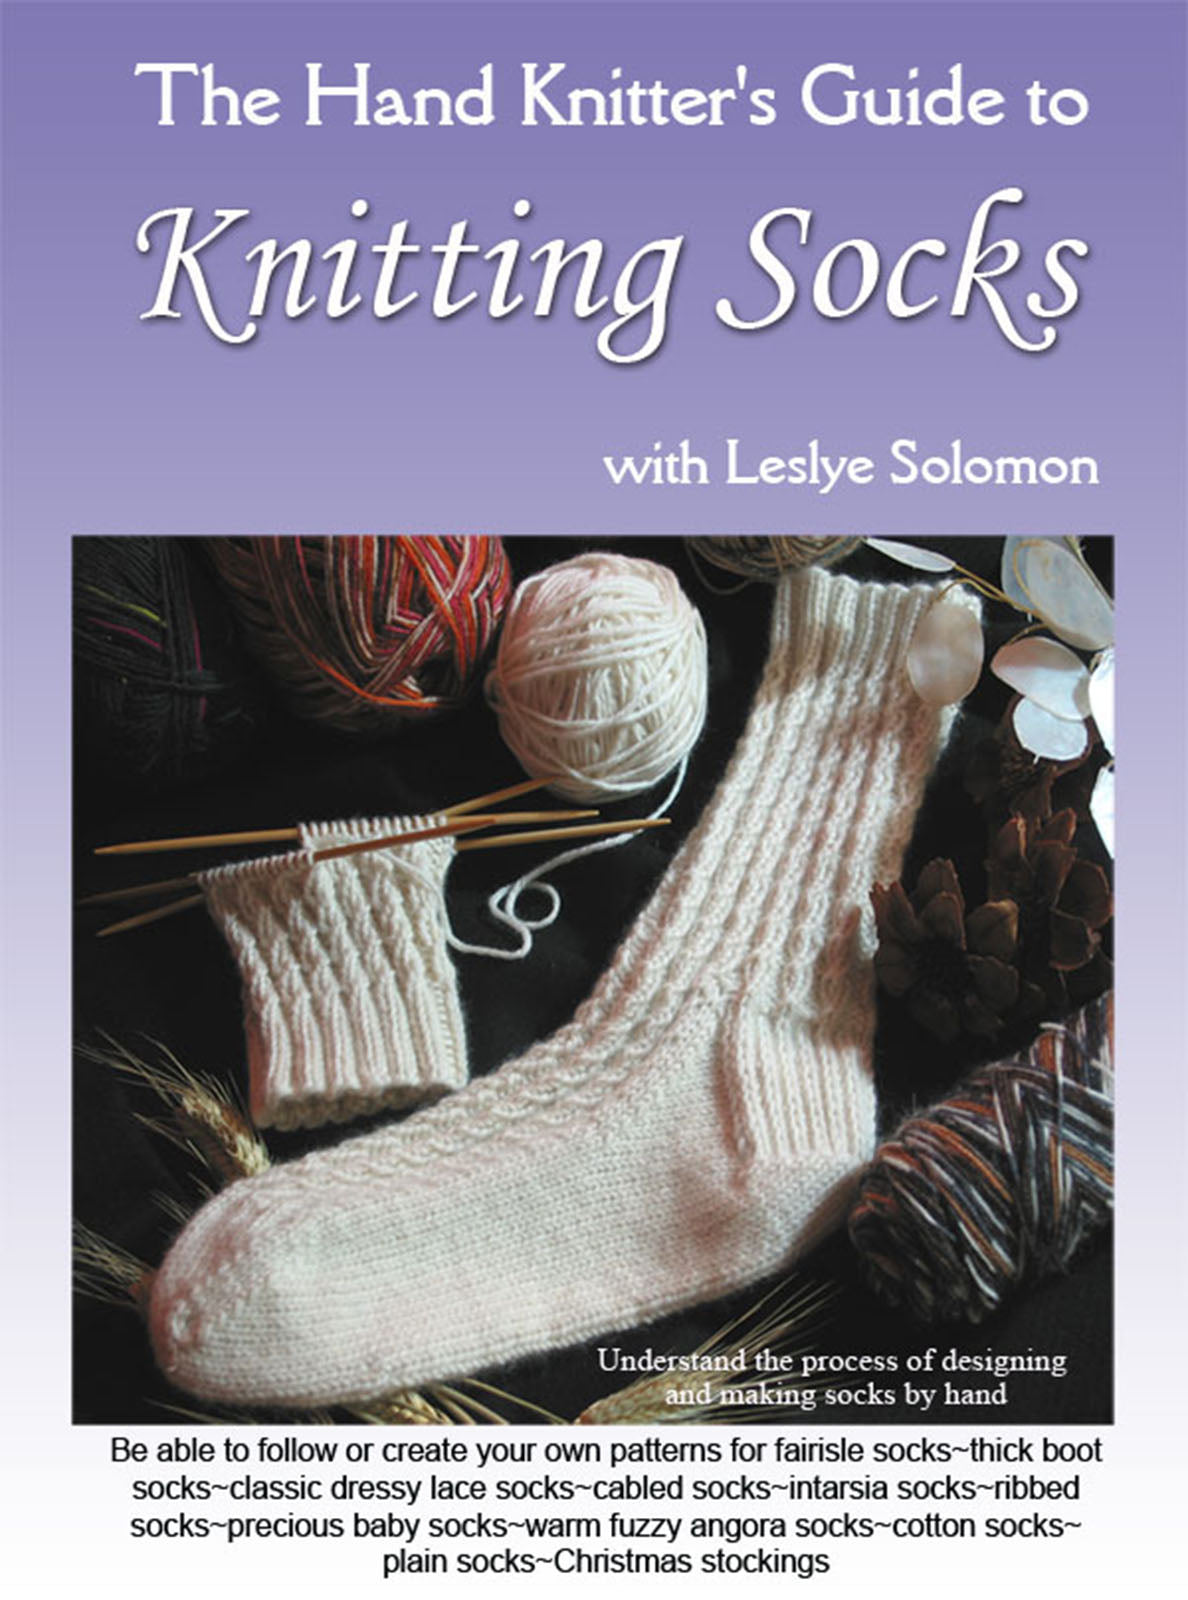 The Hand Knitter's Guide to Knitting Socks DVD by Leslye Solomon